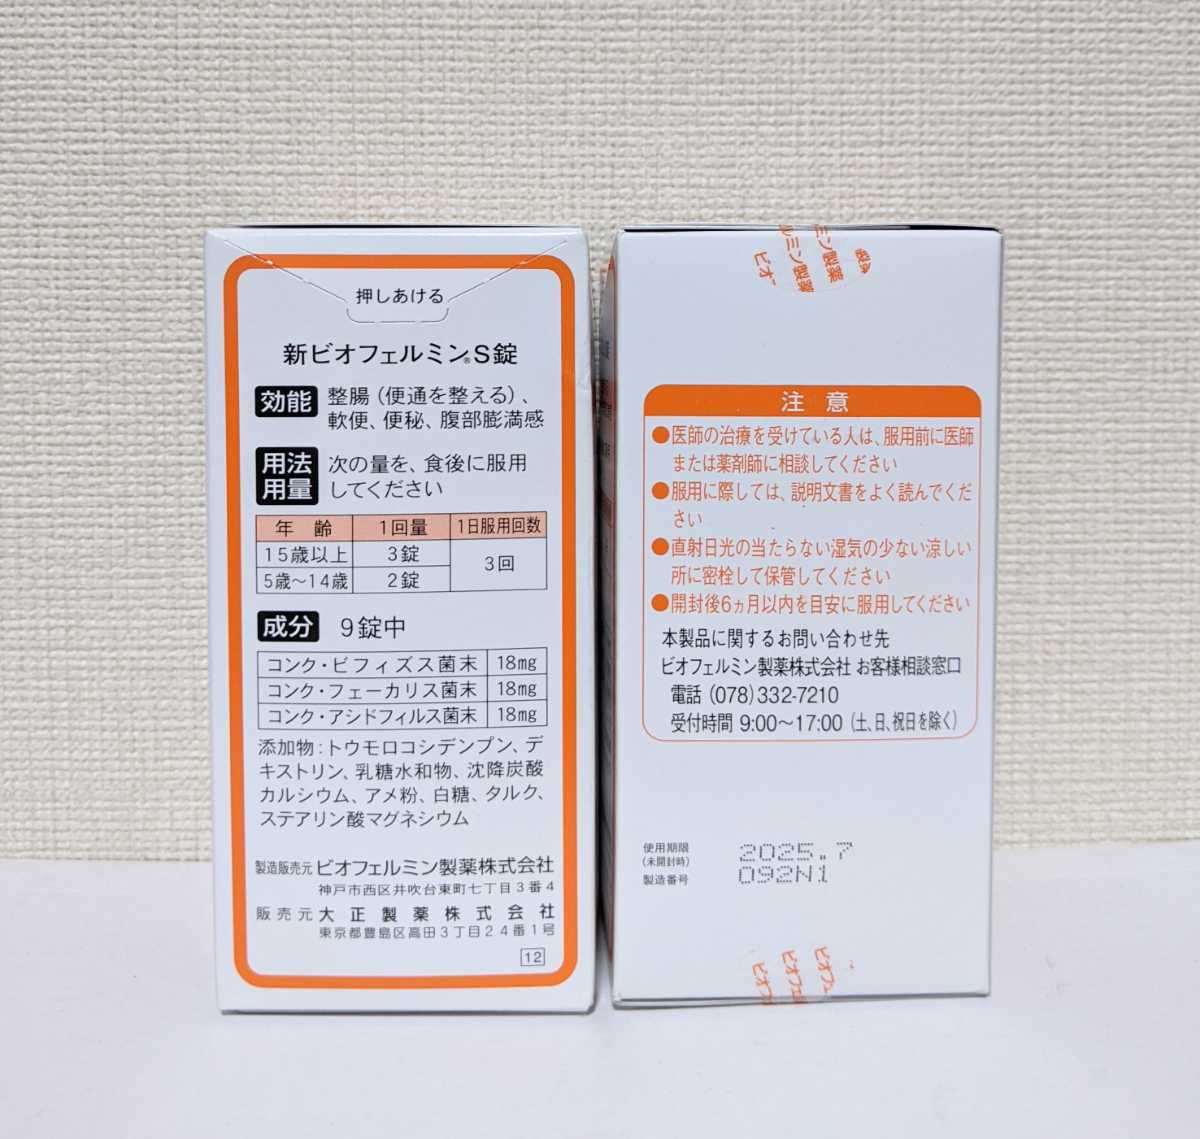 ☆送料無料☆ 大正製薬 新ビオフェルミンS錠 540錠×5箱【賞味期限